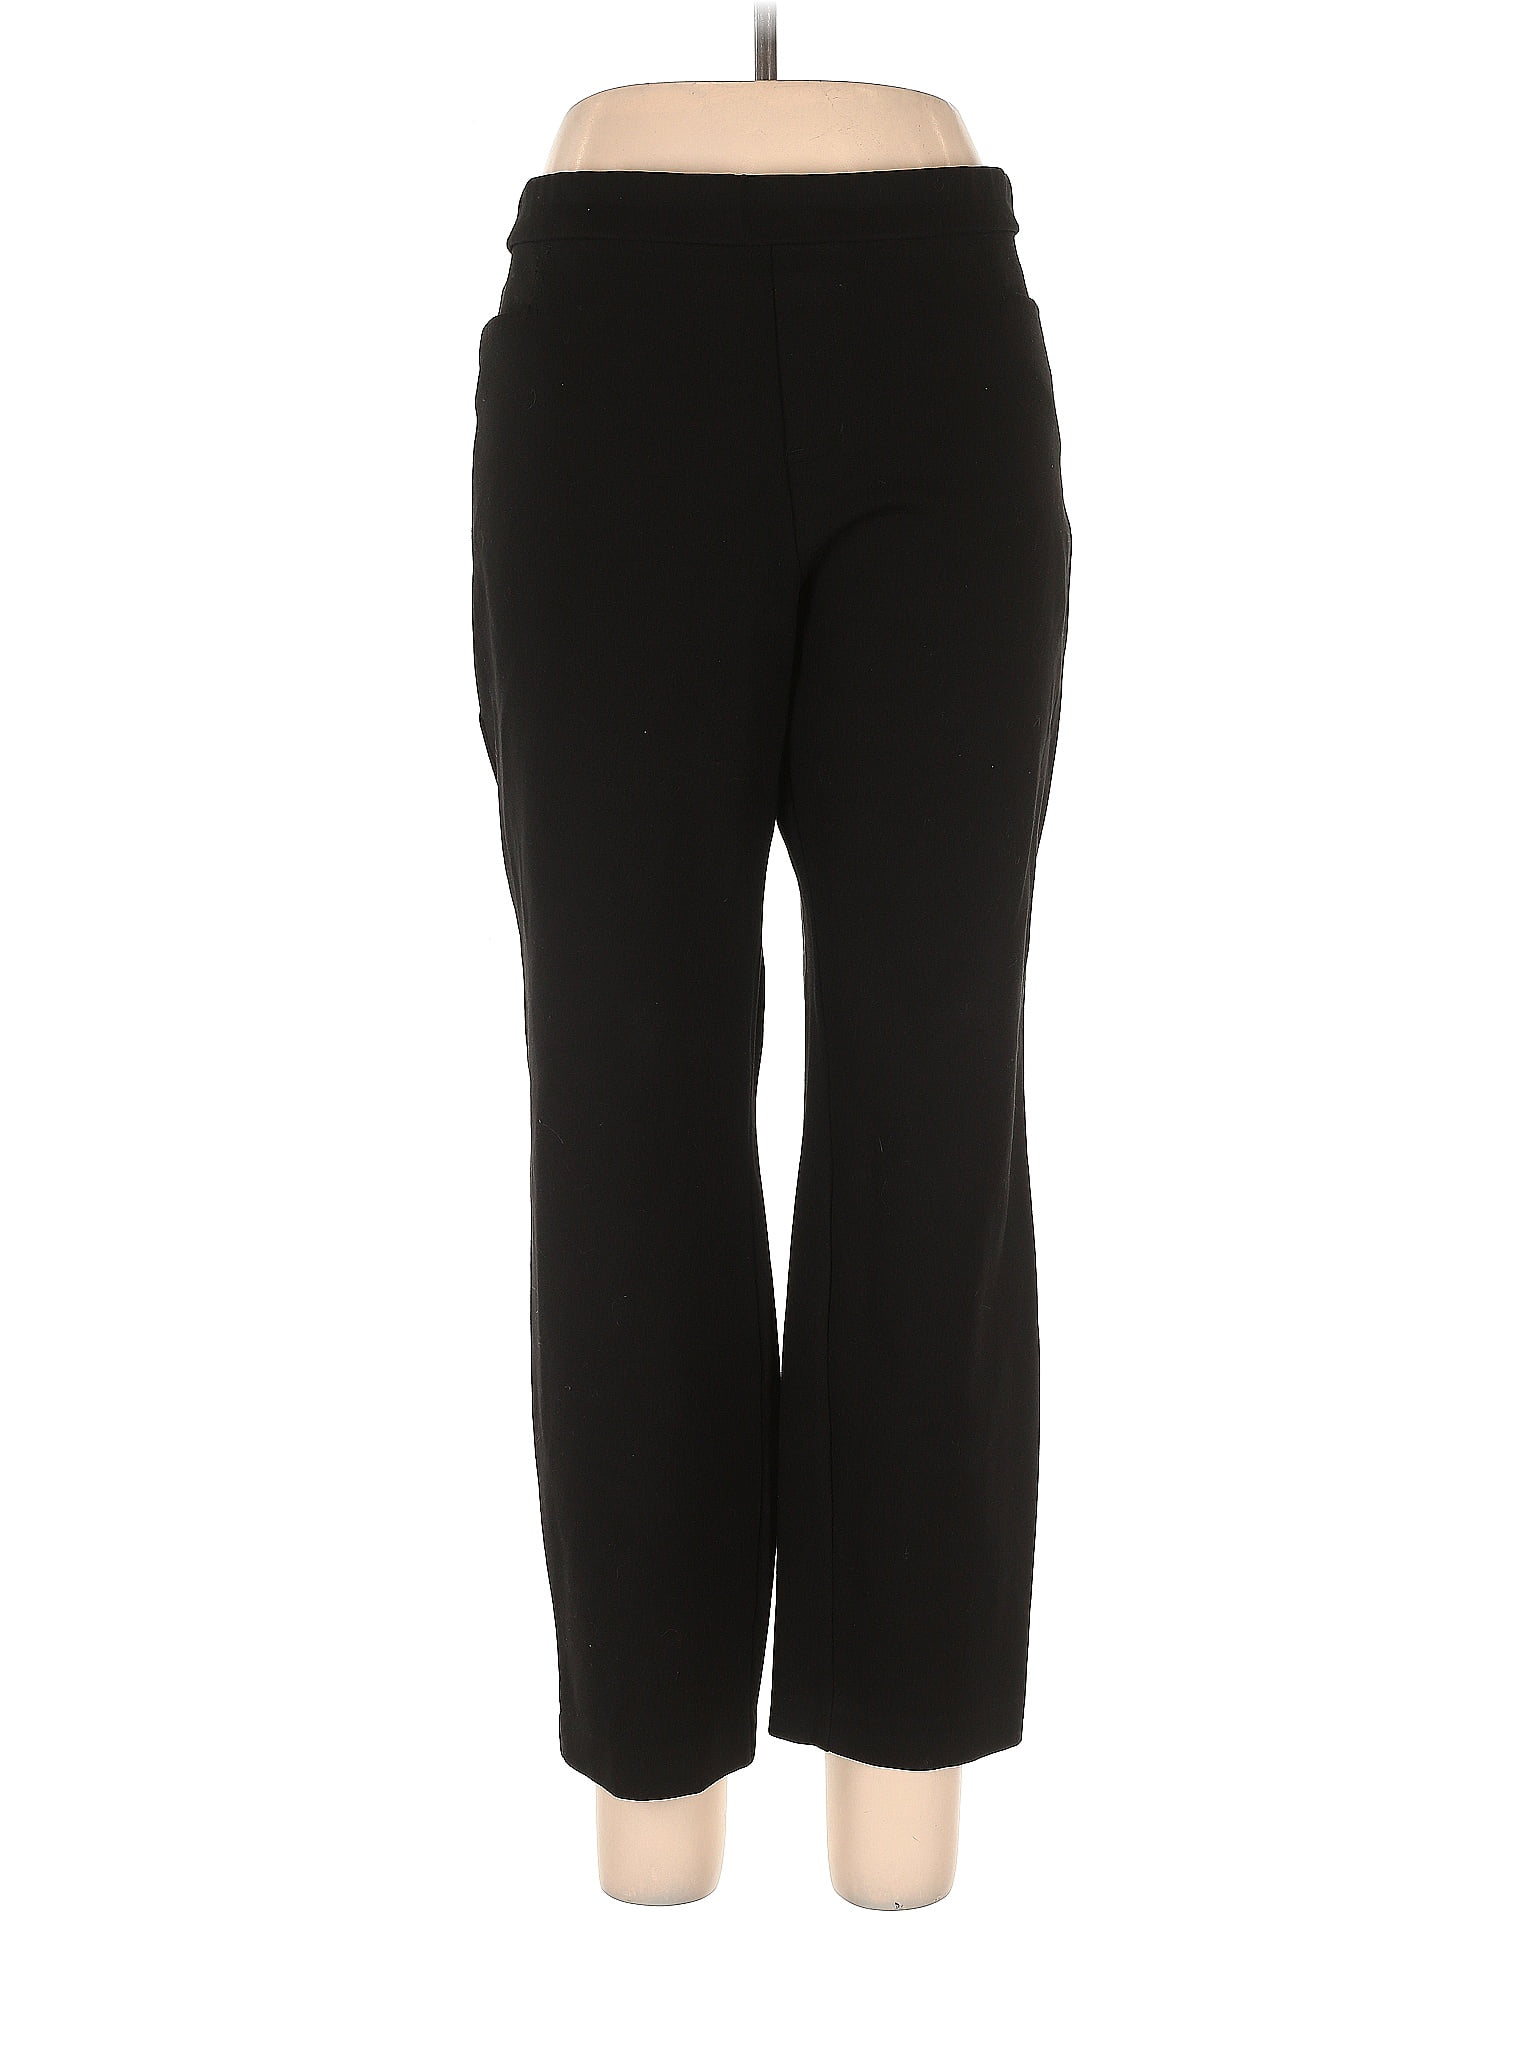 Susan Graver Polka Dots Black Dress Pants Size L (Petite) - 76